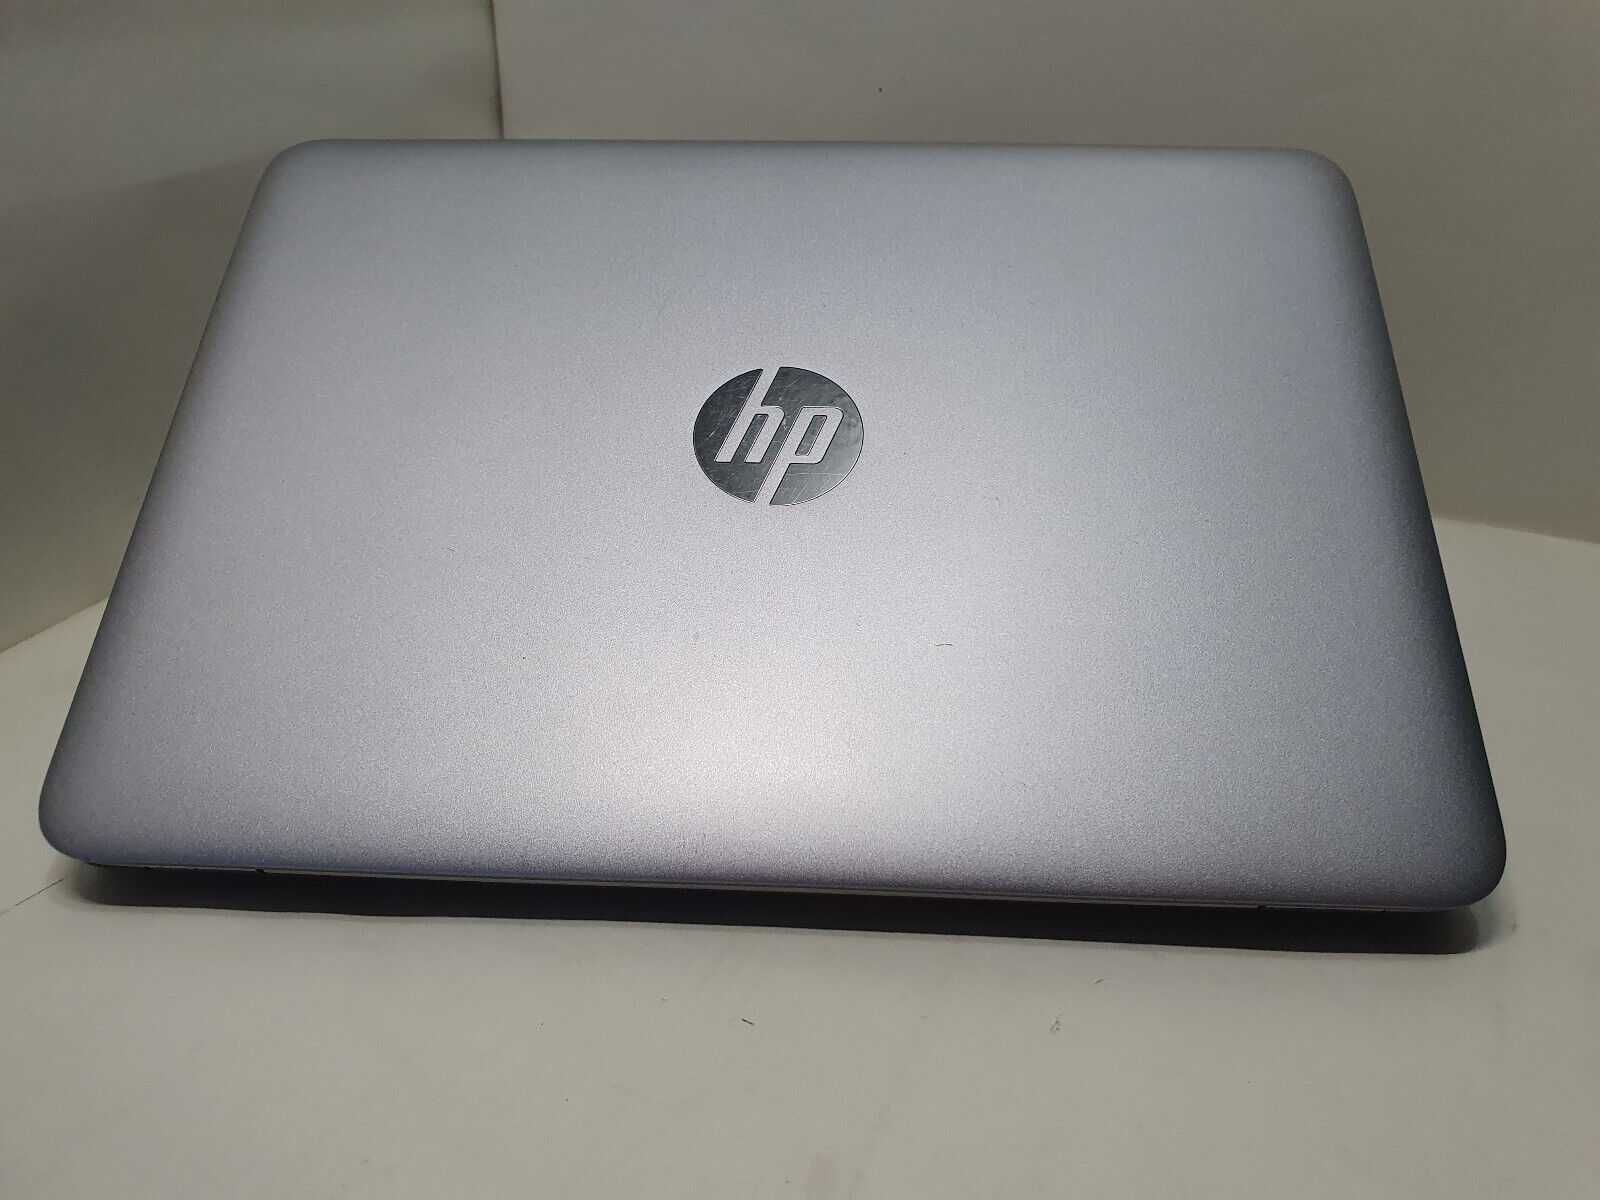 Лаптоп HP 820 G3 i5-6300U 8GB 256GB SSD 12.5 HD с Windows 10 / 11